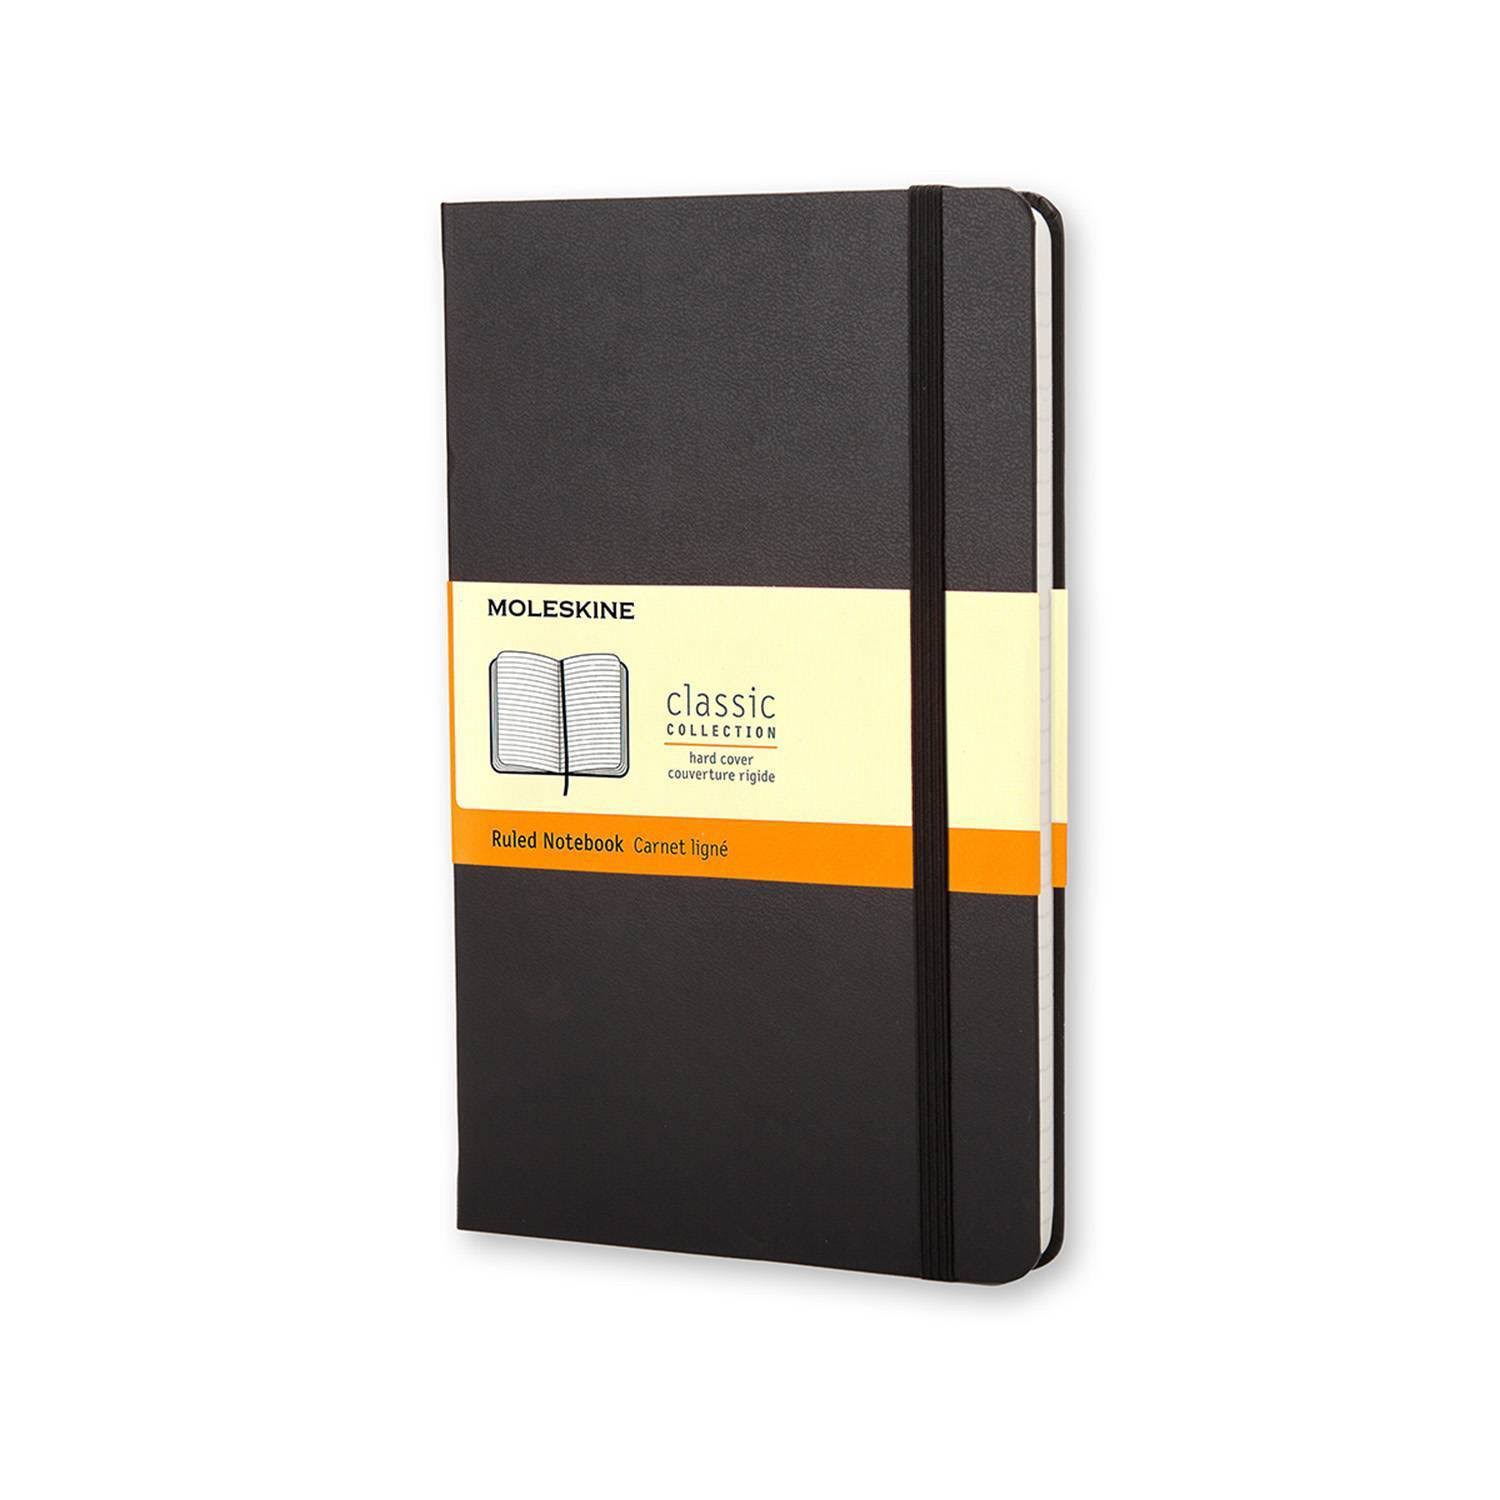 Moleskine Large Ruled Notebook - Black, x240